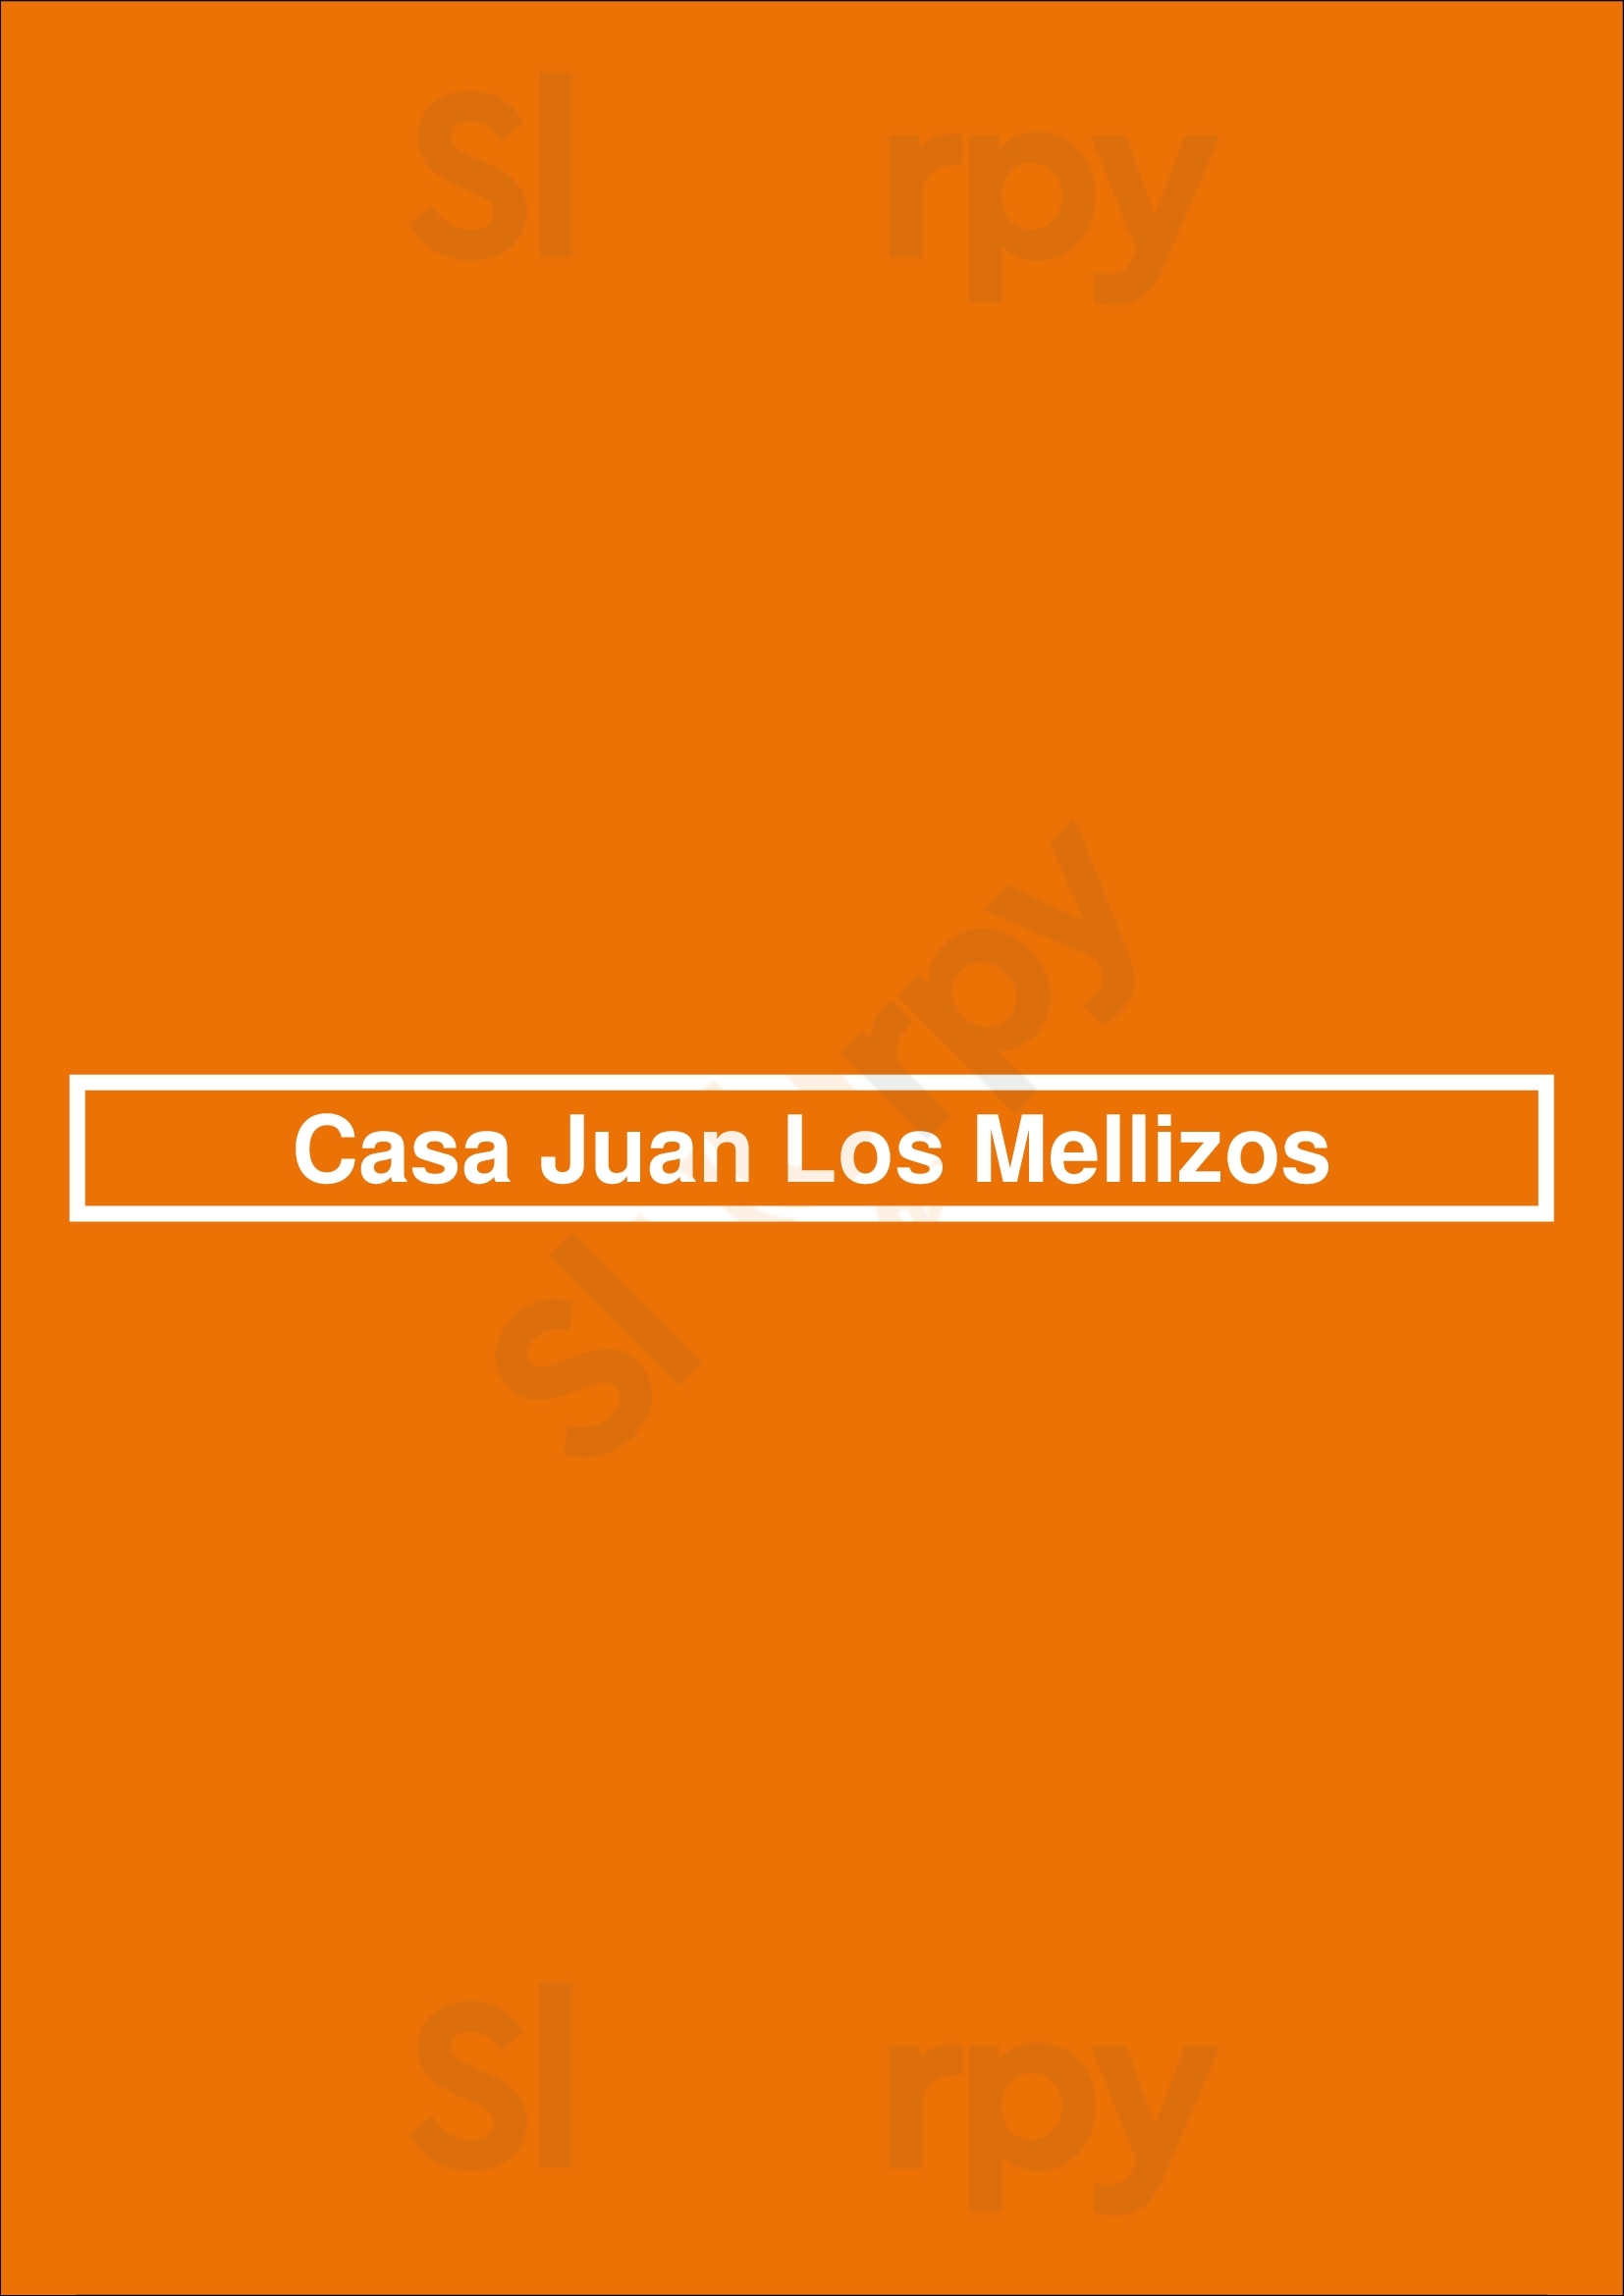 Casa Juan Los Mellizos Torremolinos Menu - 1